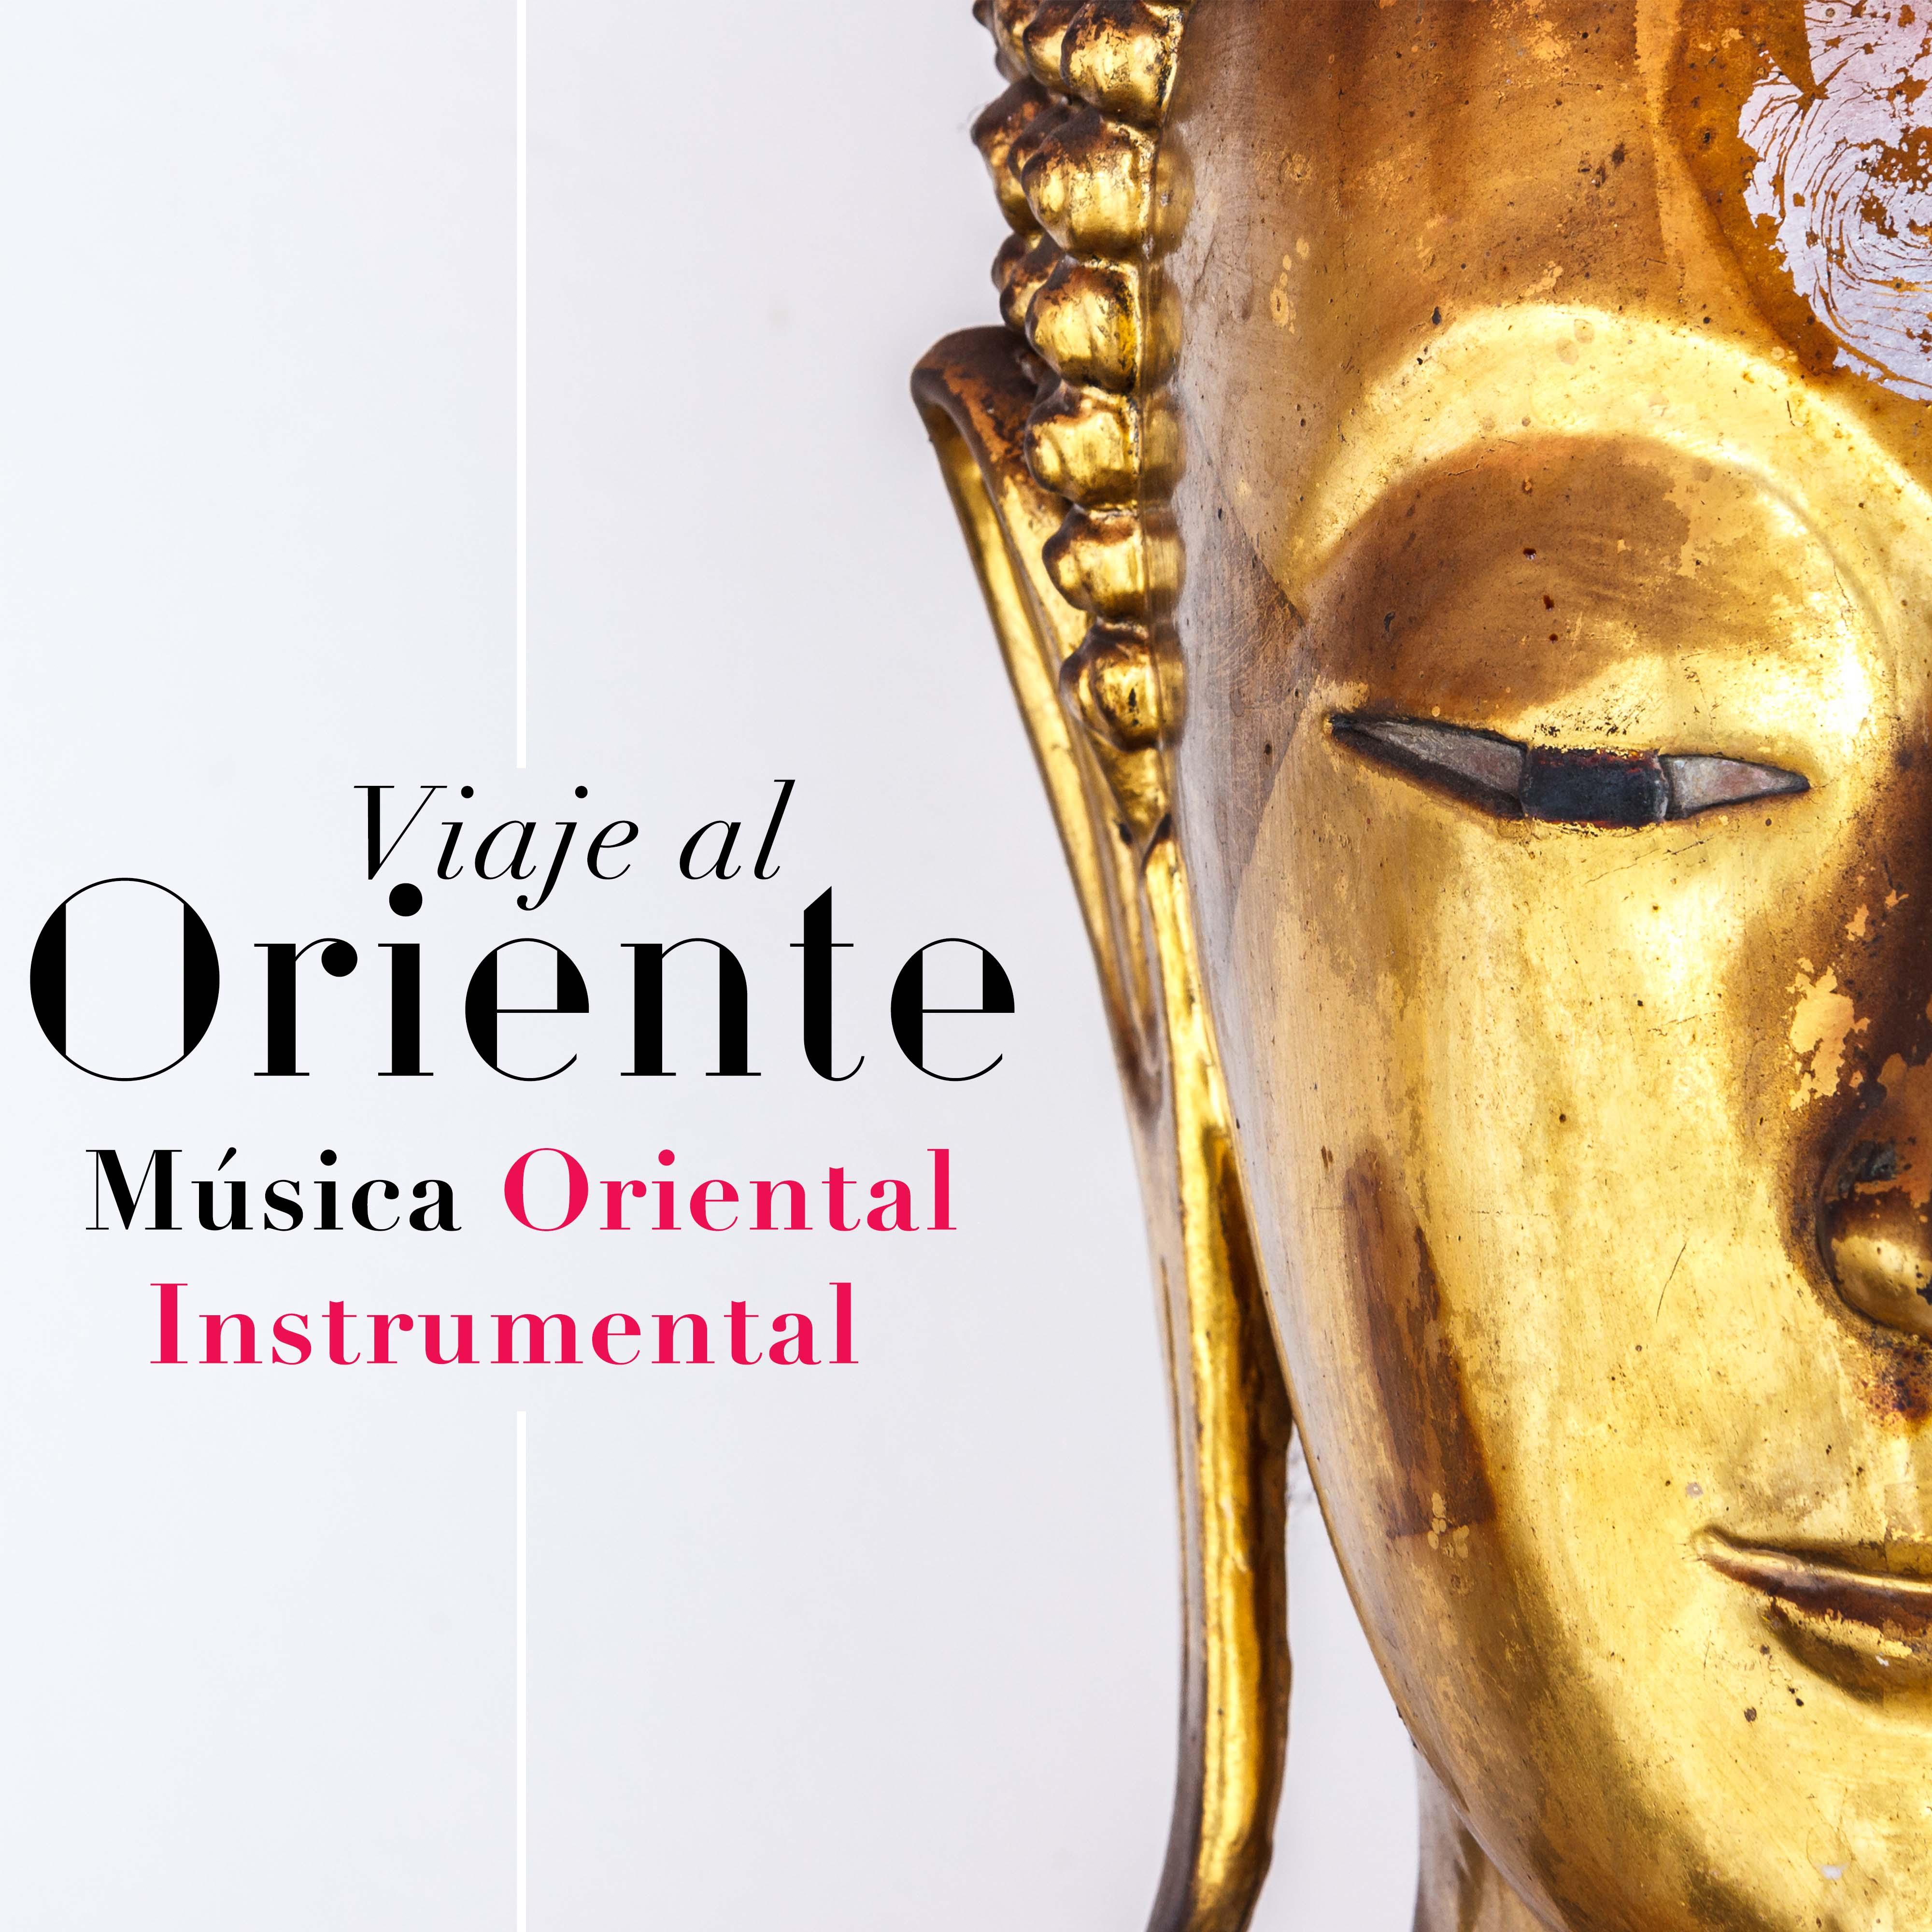 Viaje al Oriente  Musica Oriental Instrumental de Relajacion de Asia, India, Japo n, China y el Ti bet